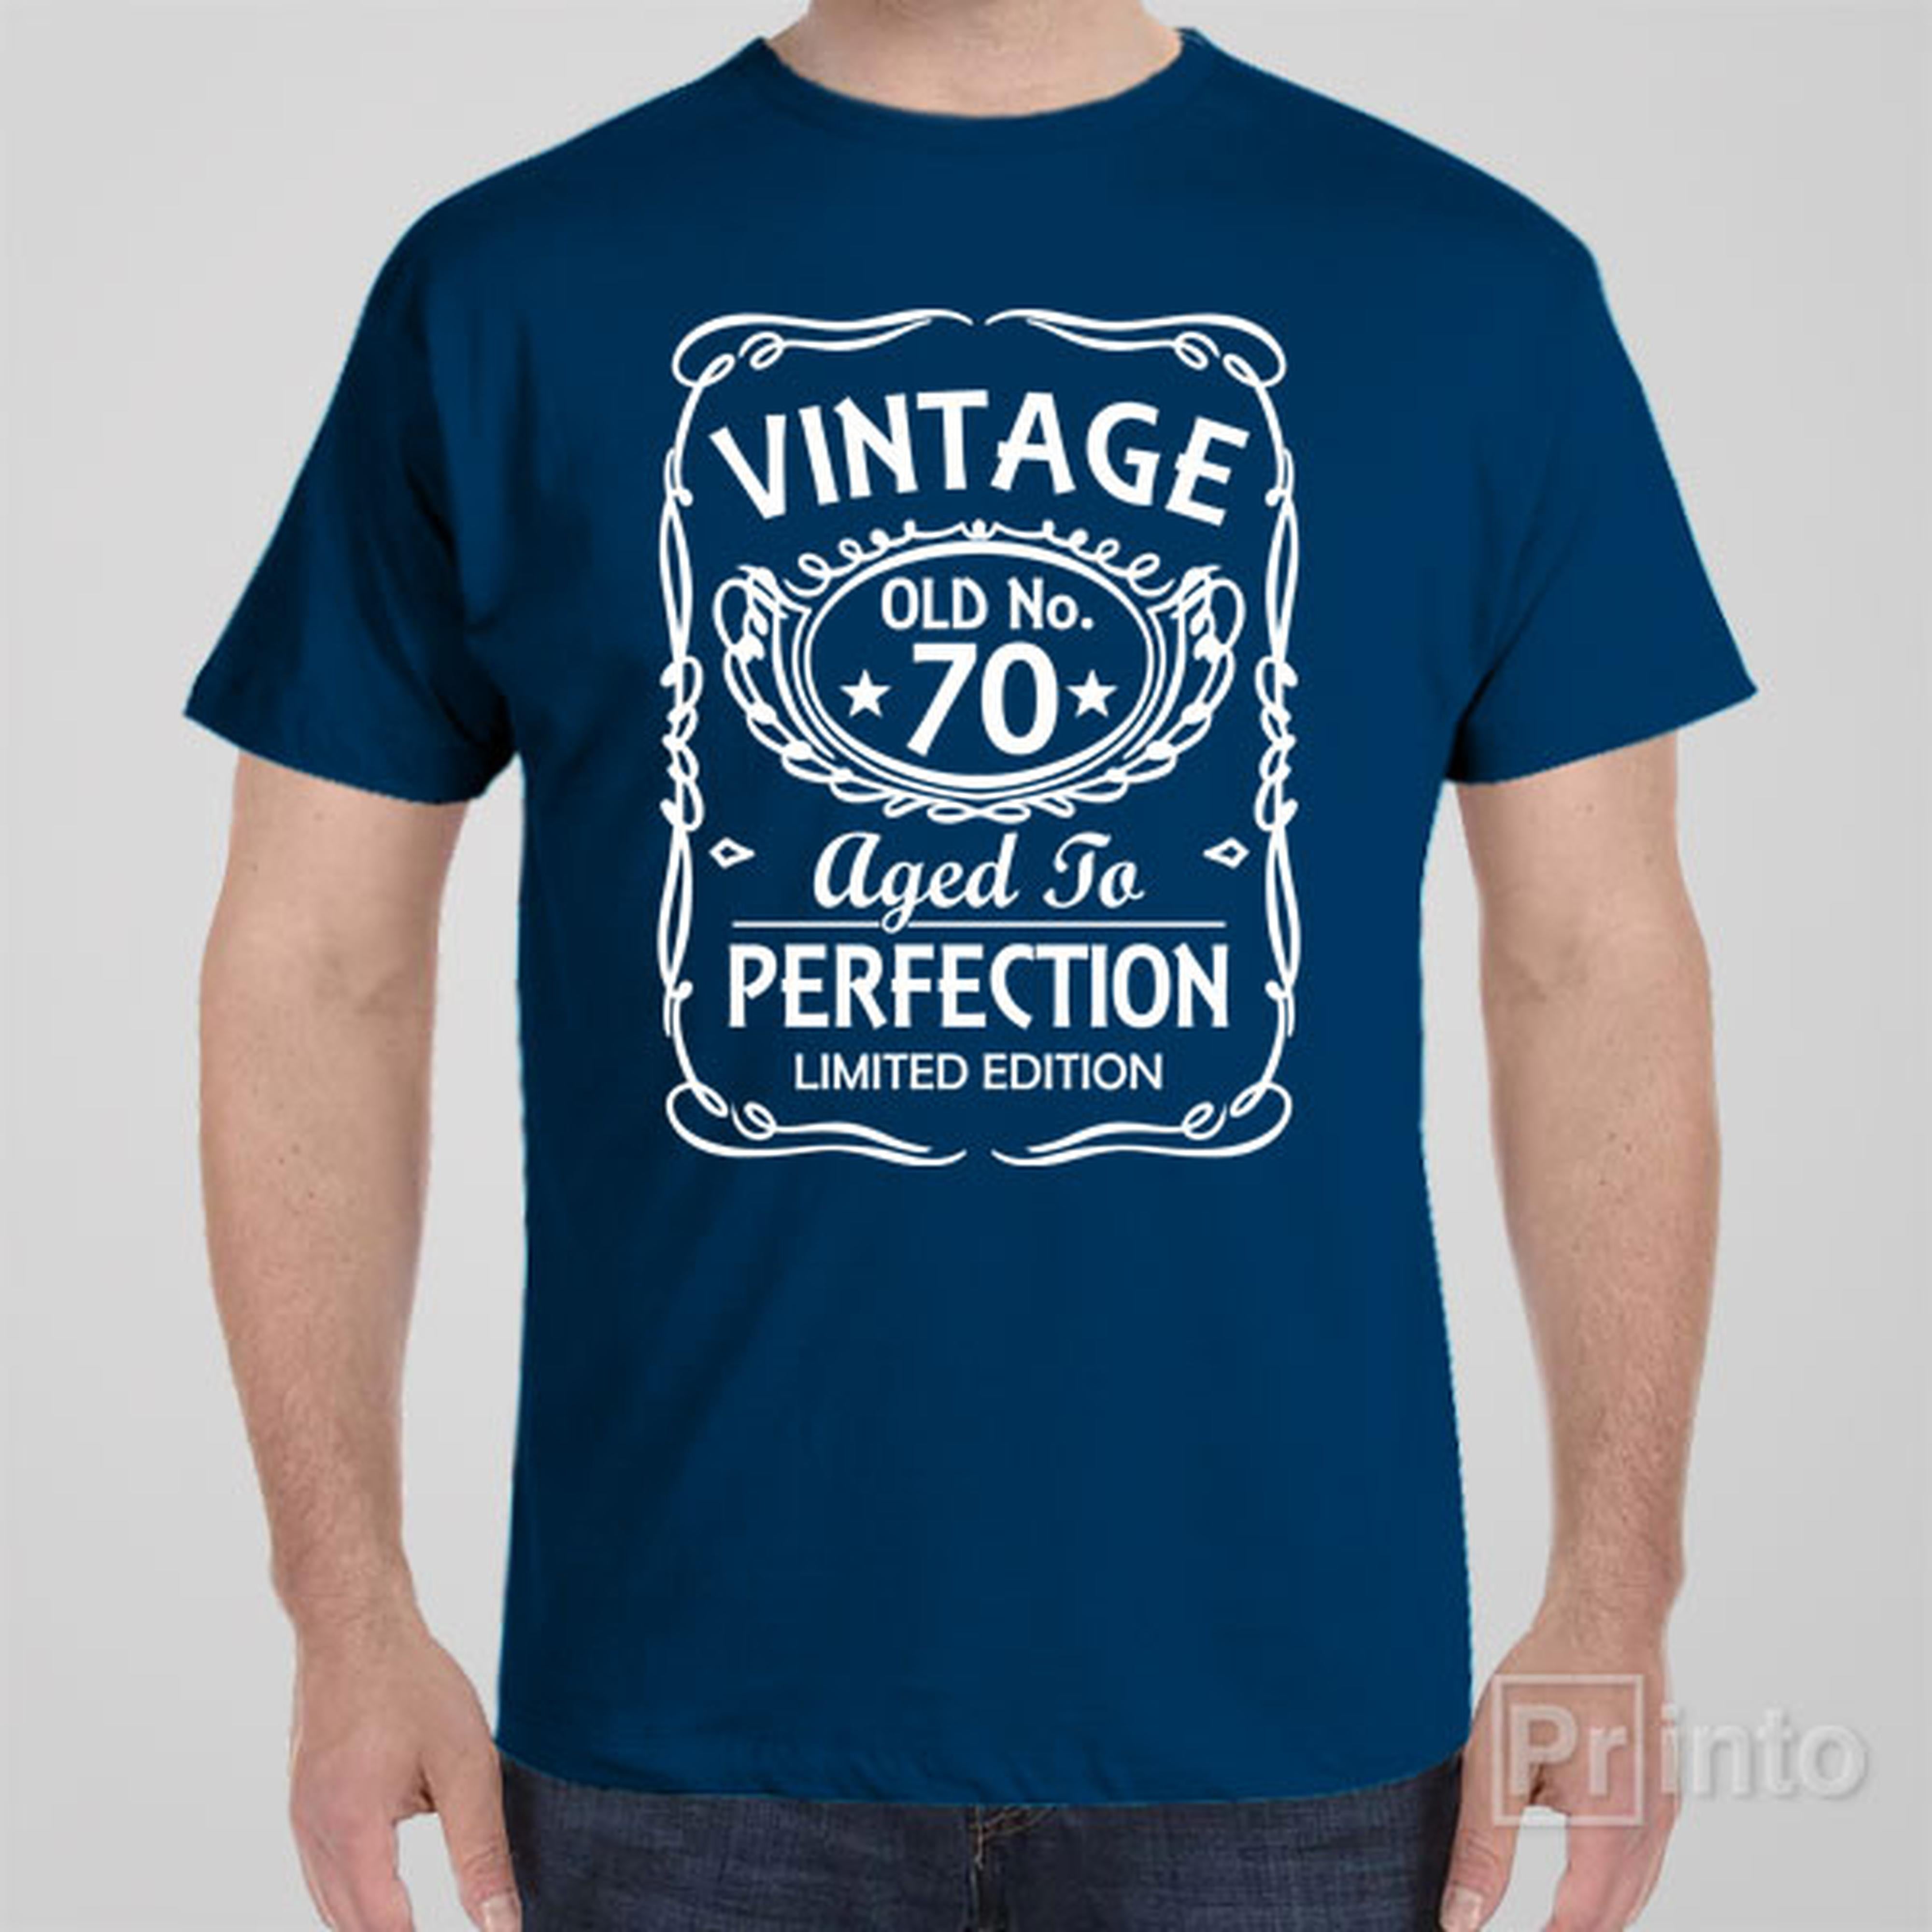 vintage-old-no-70-t-shirt